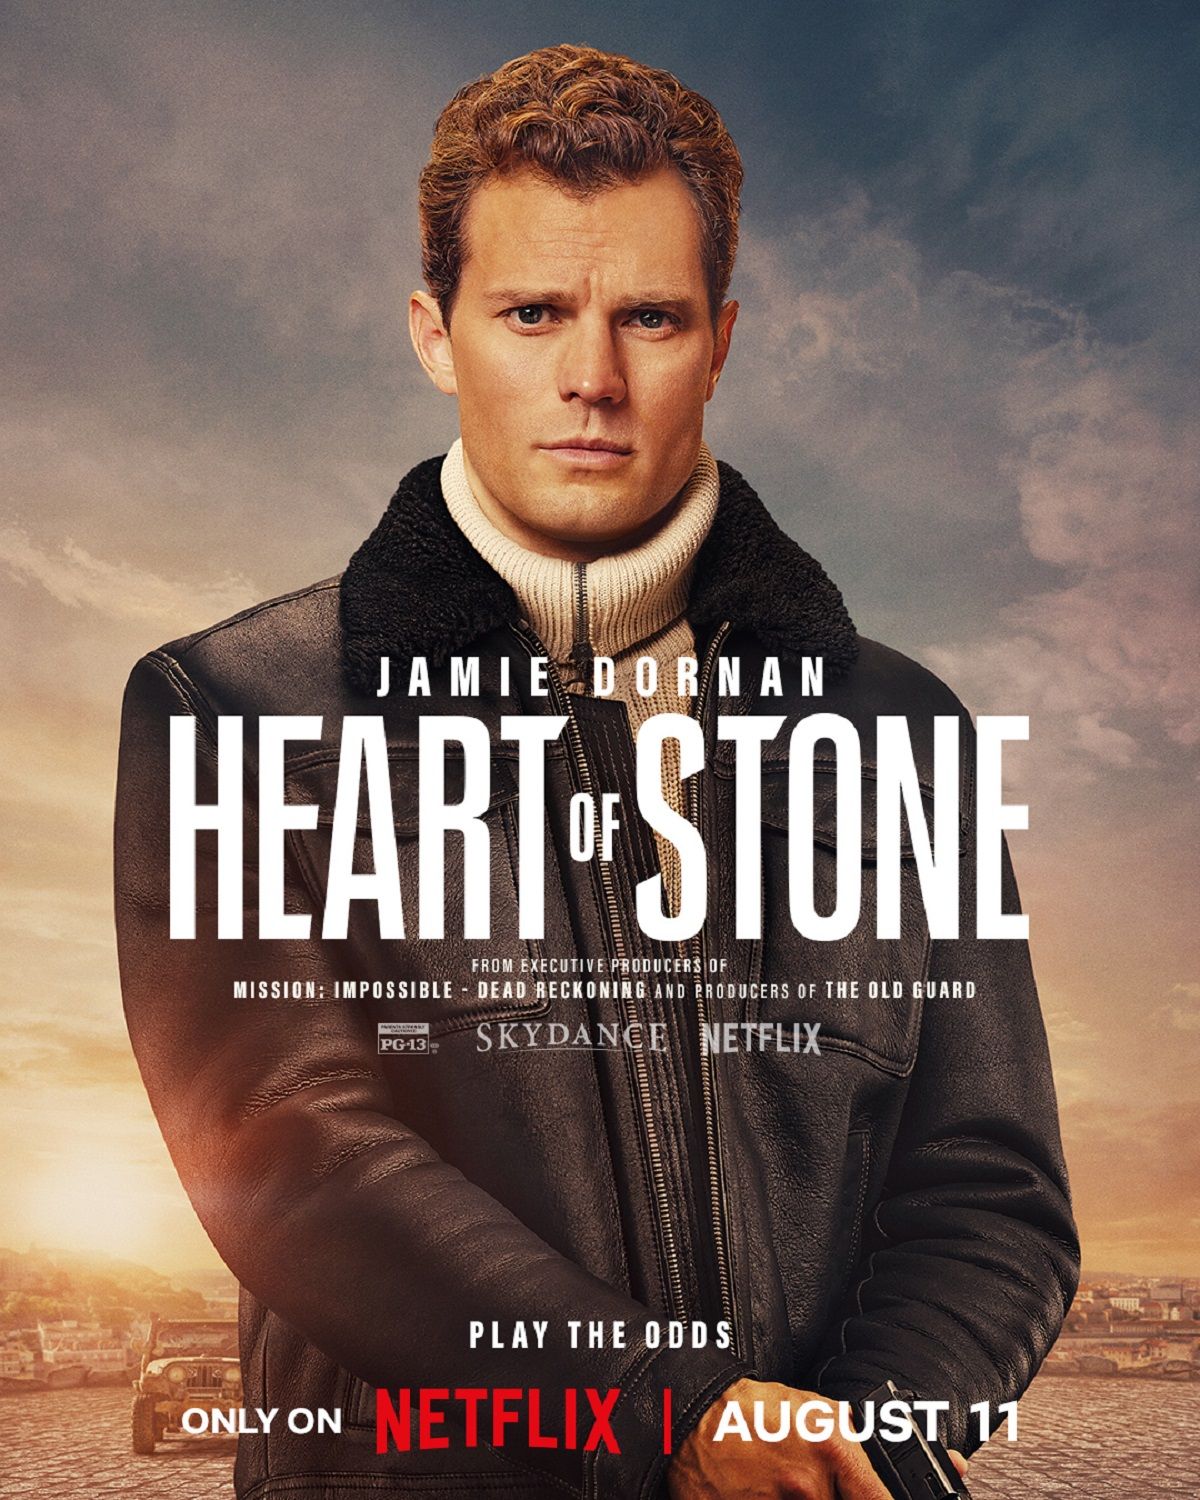 Jamie Dornan in Heart of Stone